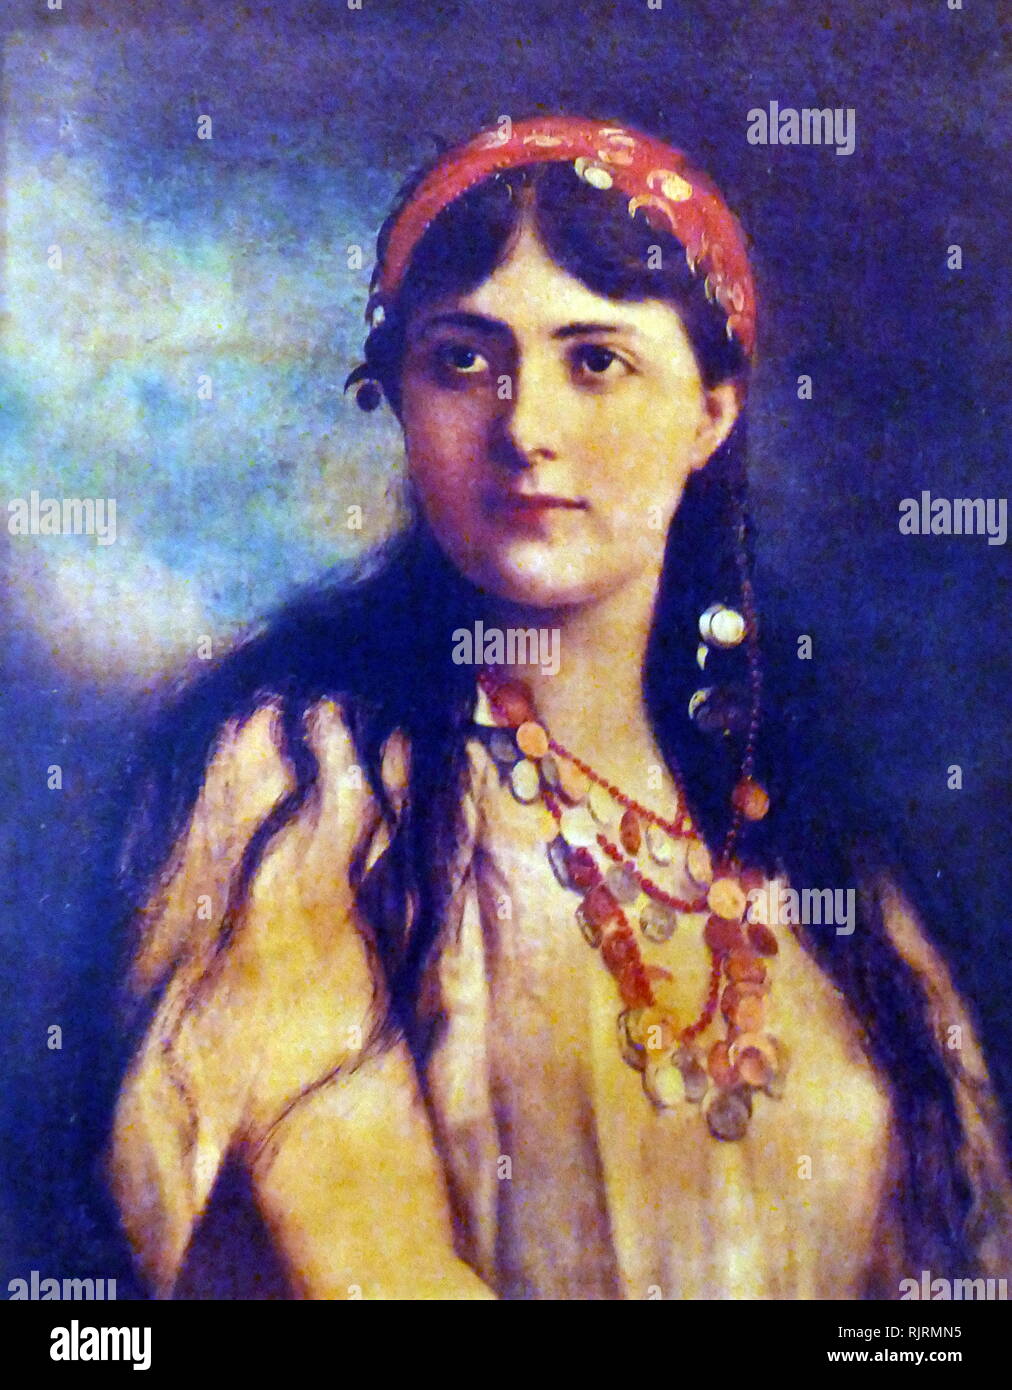 Ouida (1839 - 1908) pseudonimo del romanziere inglese Maria Luisa rame (anche se lei preferisce essere conosciuto come Marie Louise de la Ramee). Foto Stock